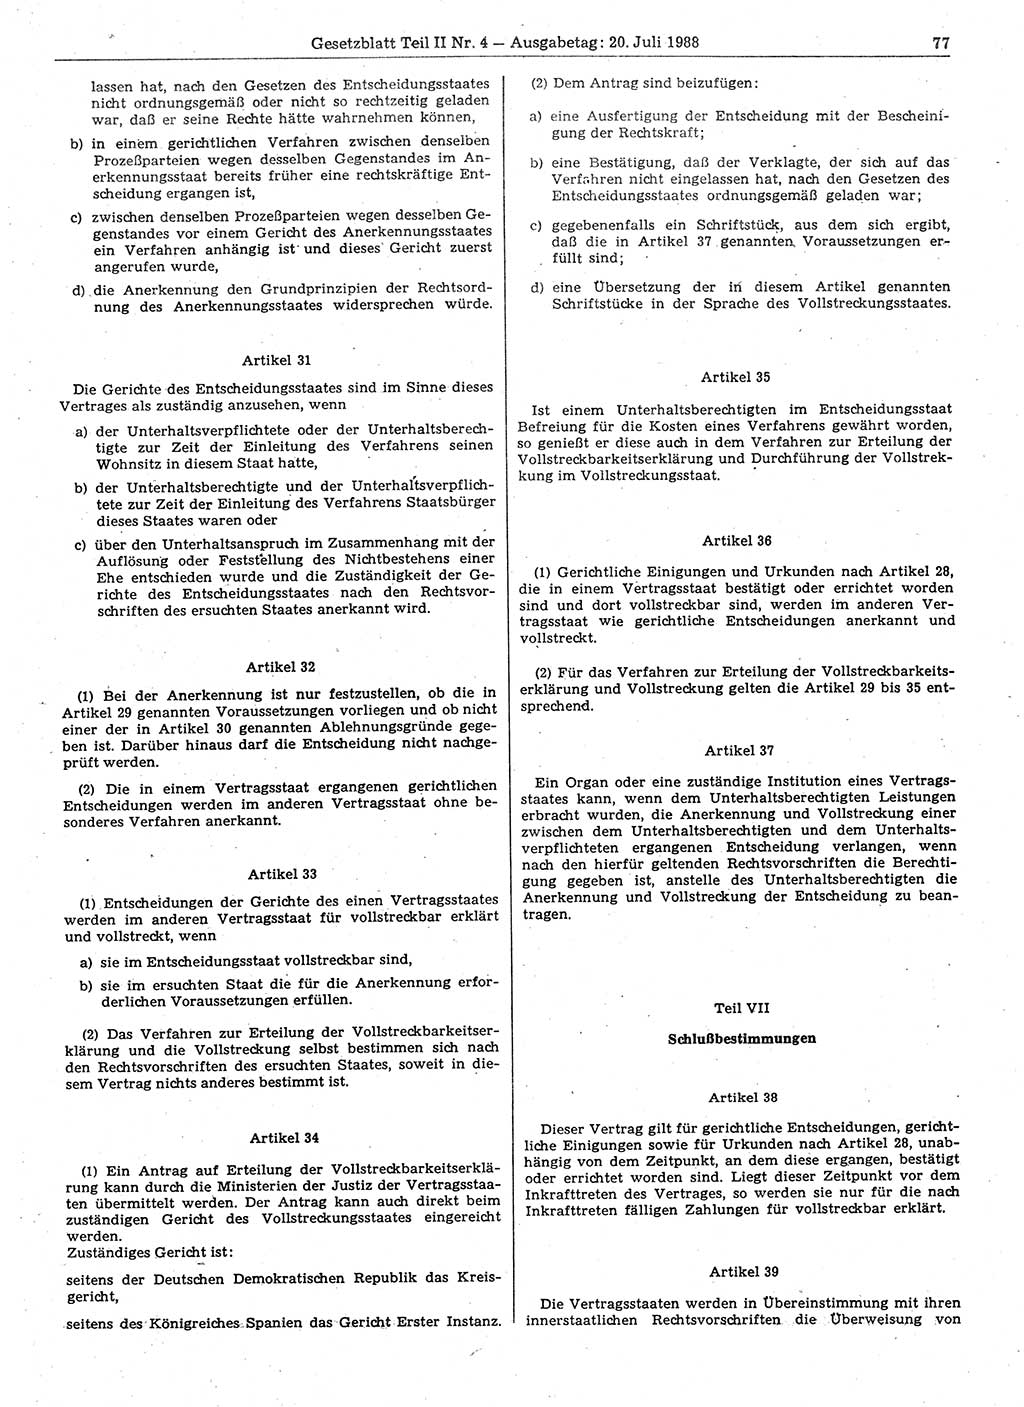 Gesetzblatt (GBl.) der Deutschen Demokratischen Republik (DDR) Teil ⅠⅠ 1988, Seite 77 (GBl. DDR ⅠⅠ 1988, S. 77)